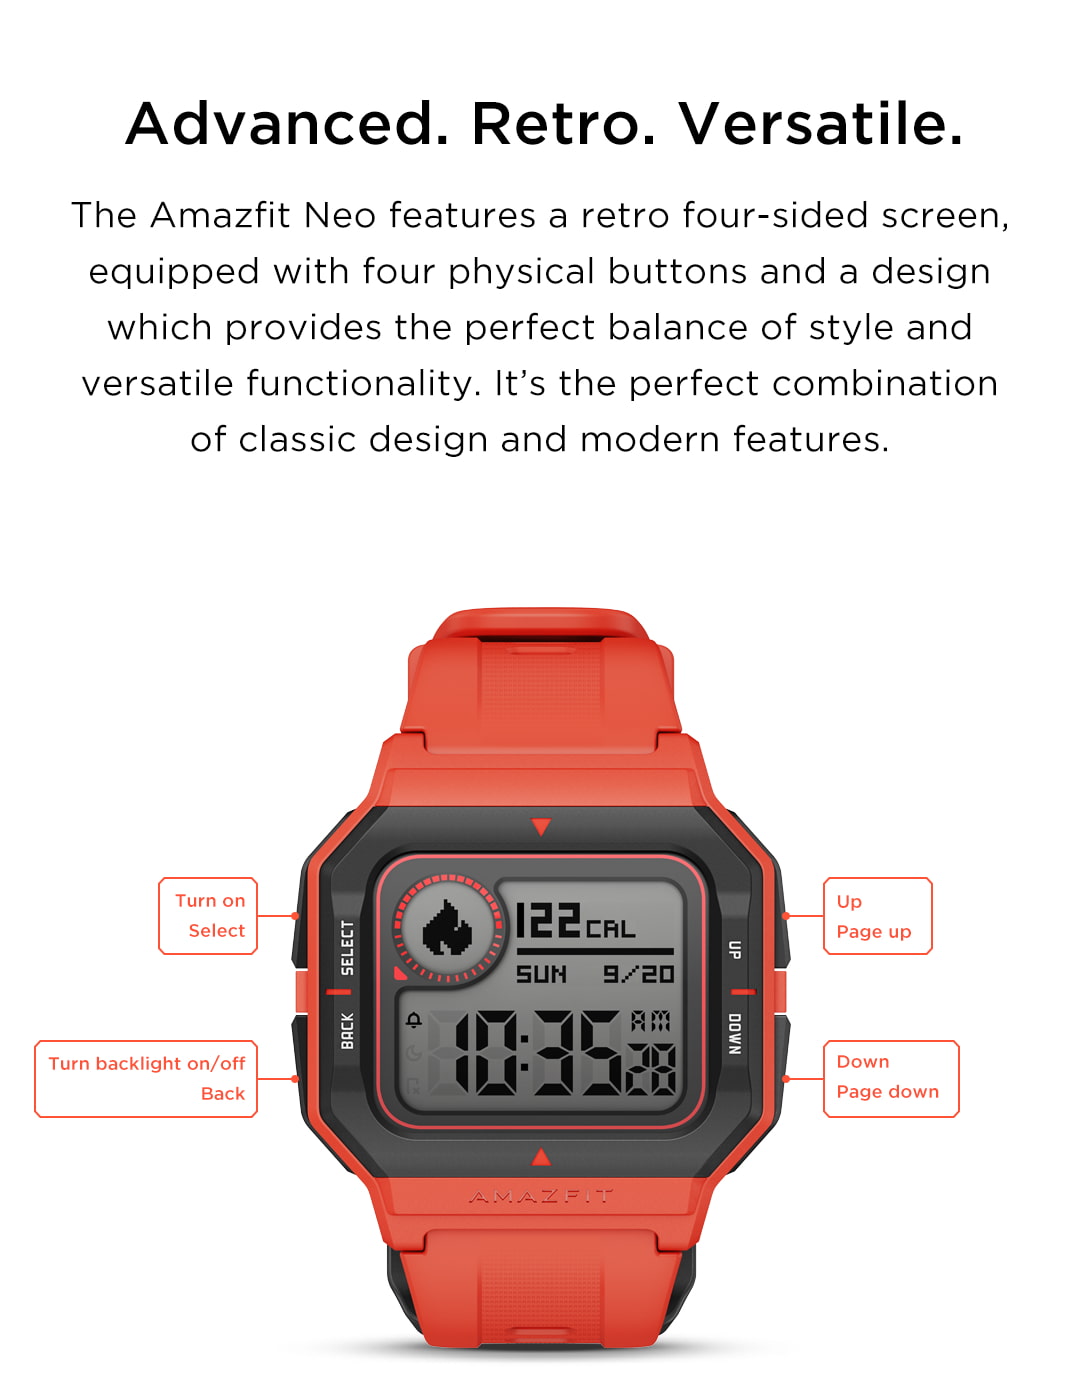 Orologio digitale smartwatch sensore battito cuore sonno sport Huami AmazFit Neo 